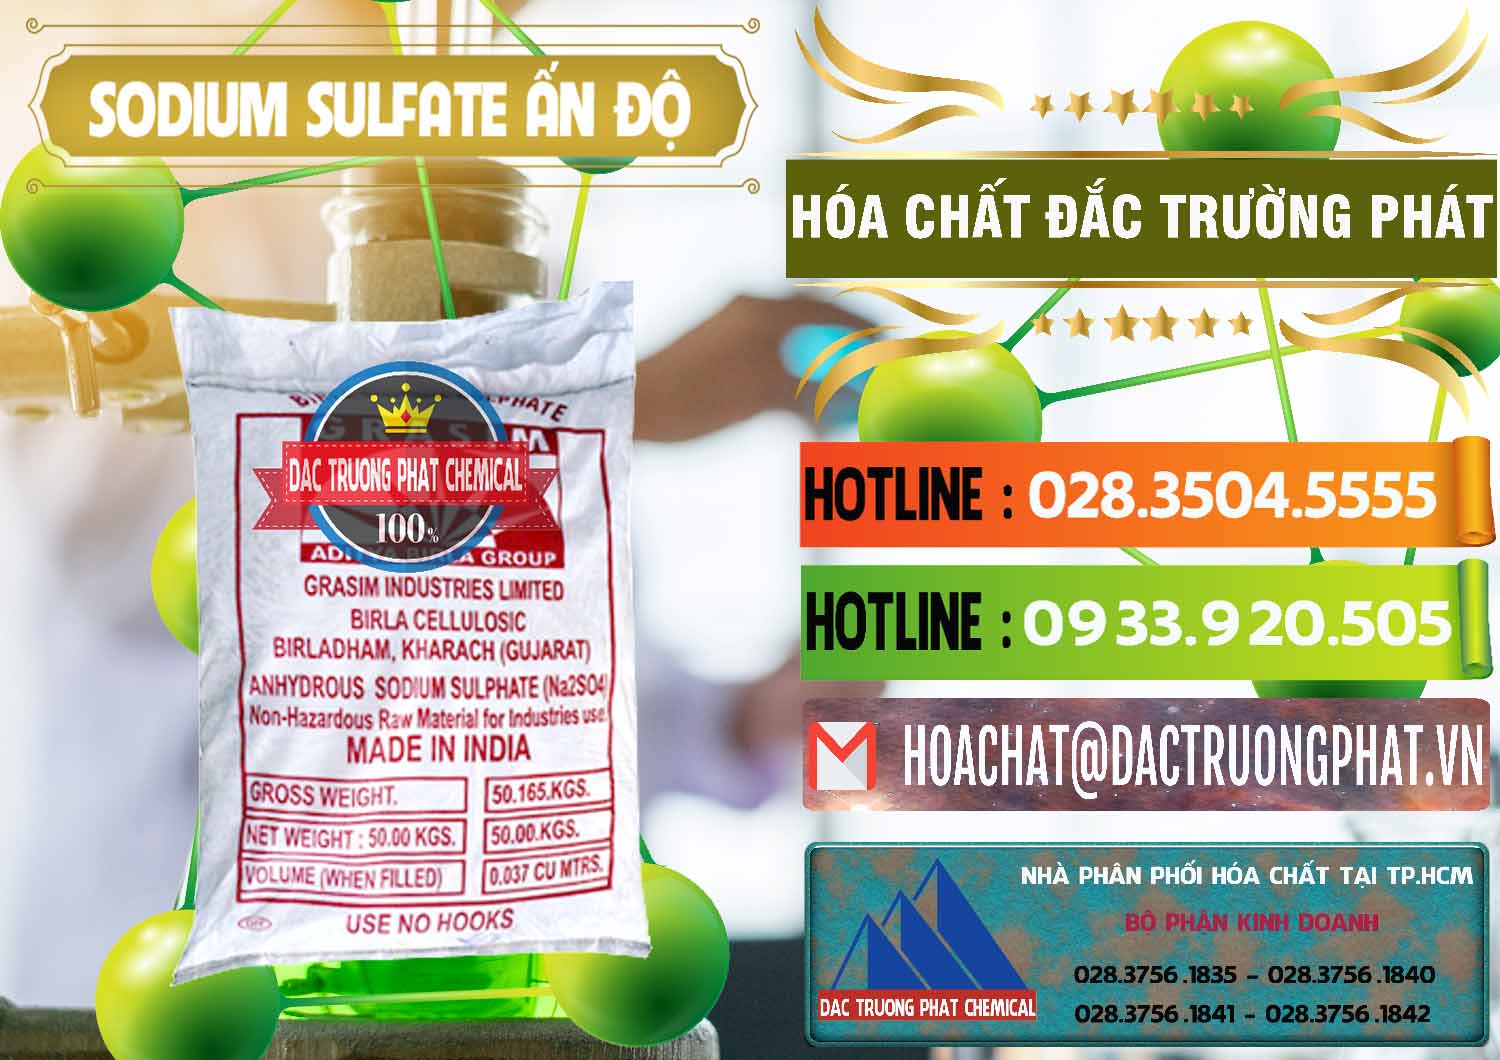 Cty kinh doanh - bán Sodium Sulphate - Muối Sunfat Na2SO4 Aditya Birla Grasim Ấn Độ India - 0462 - Công ty chuyên phân phối và bán hóa chất tại TP.HCM - cungcaphoachat.com.vn